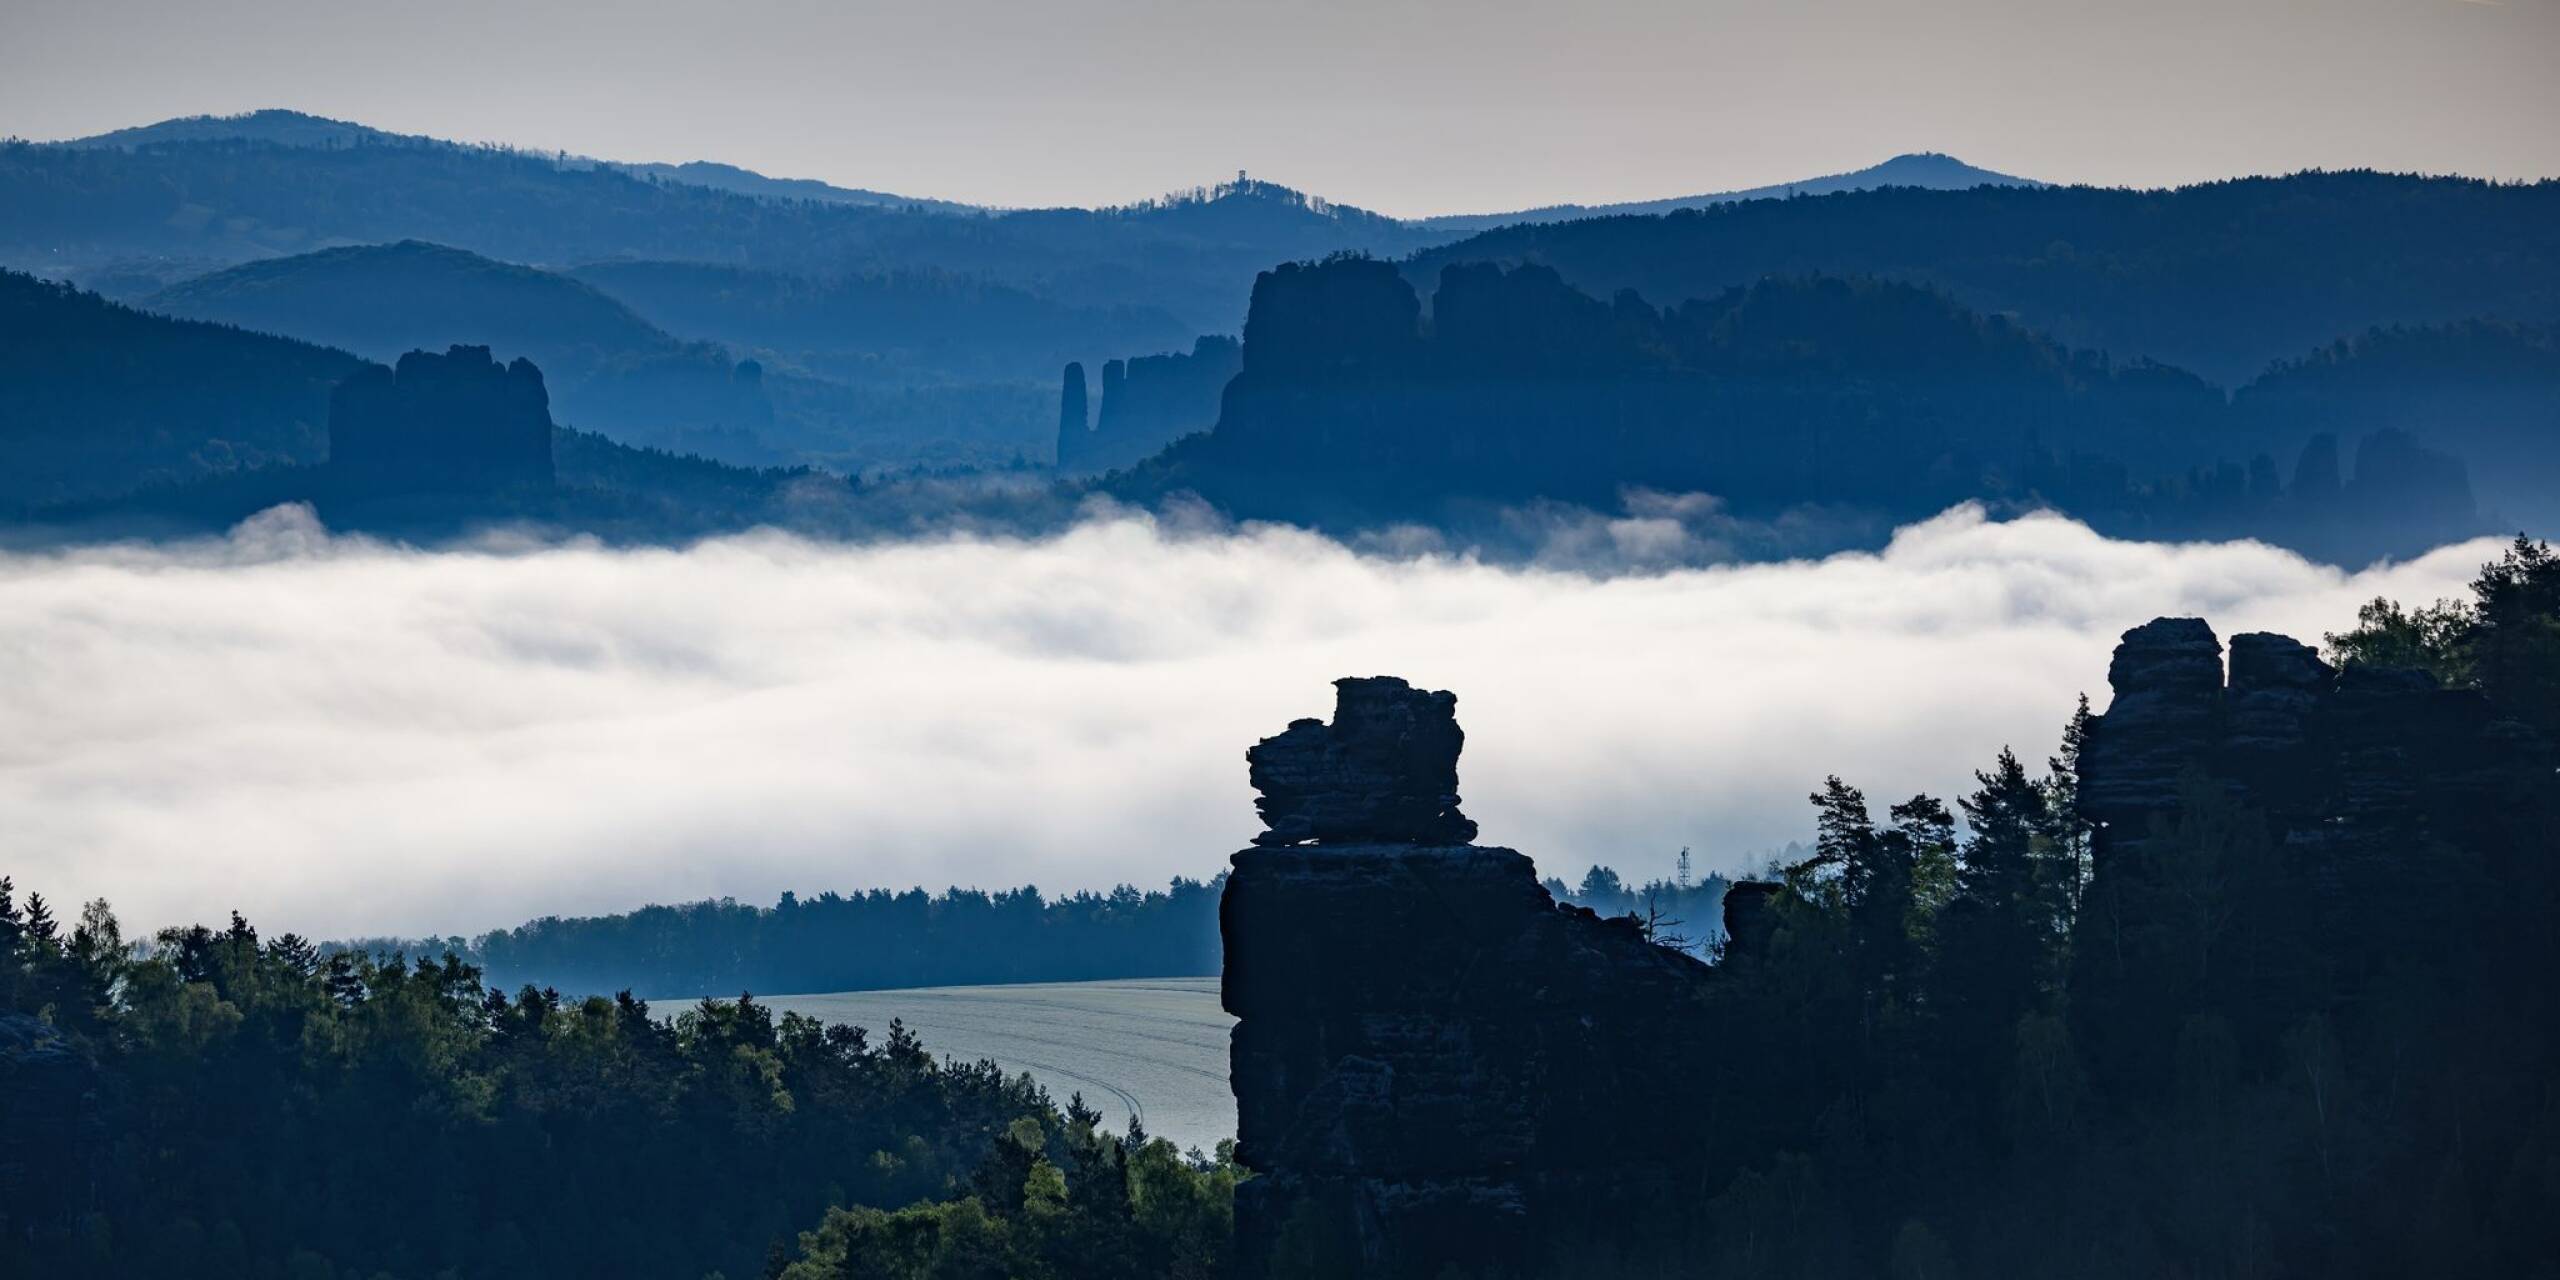 Nebel zieht am Morgen durch die Sächsische Schweiz bei Gohrisch.